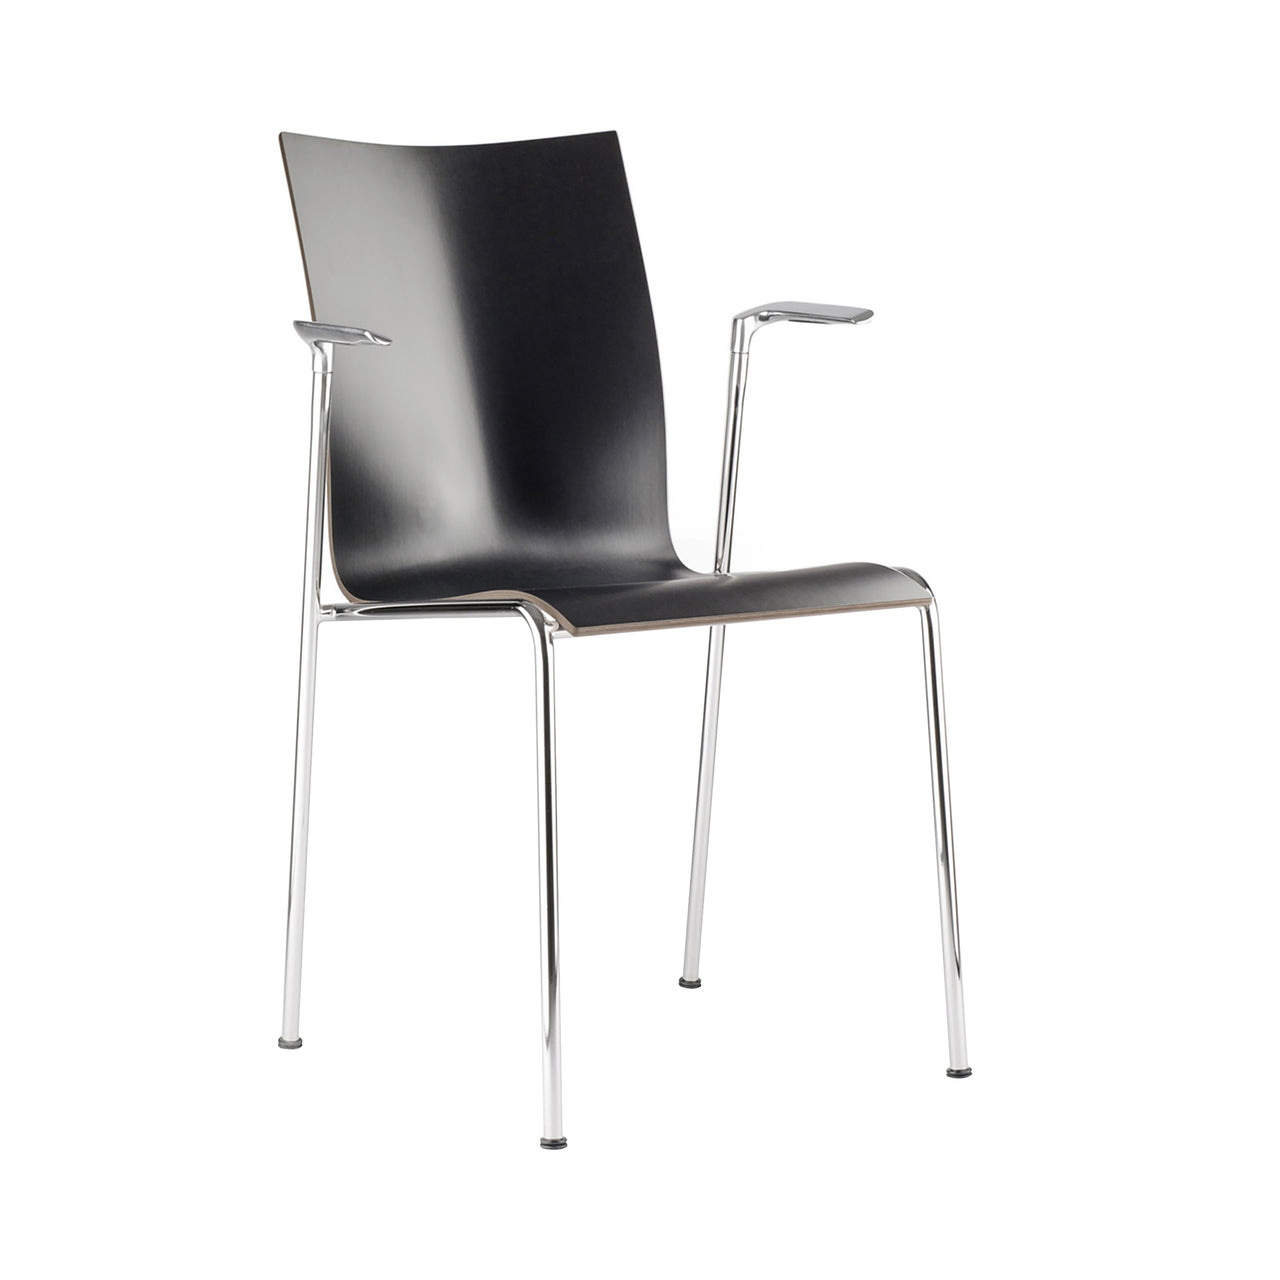 Chairik High 114 Chair: Melamine - Black